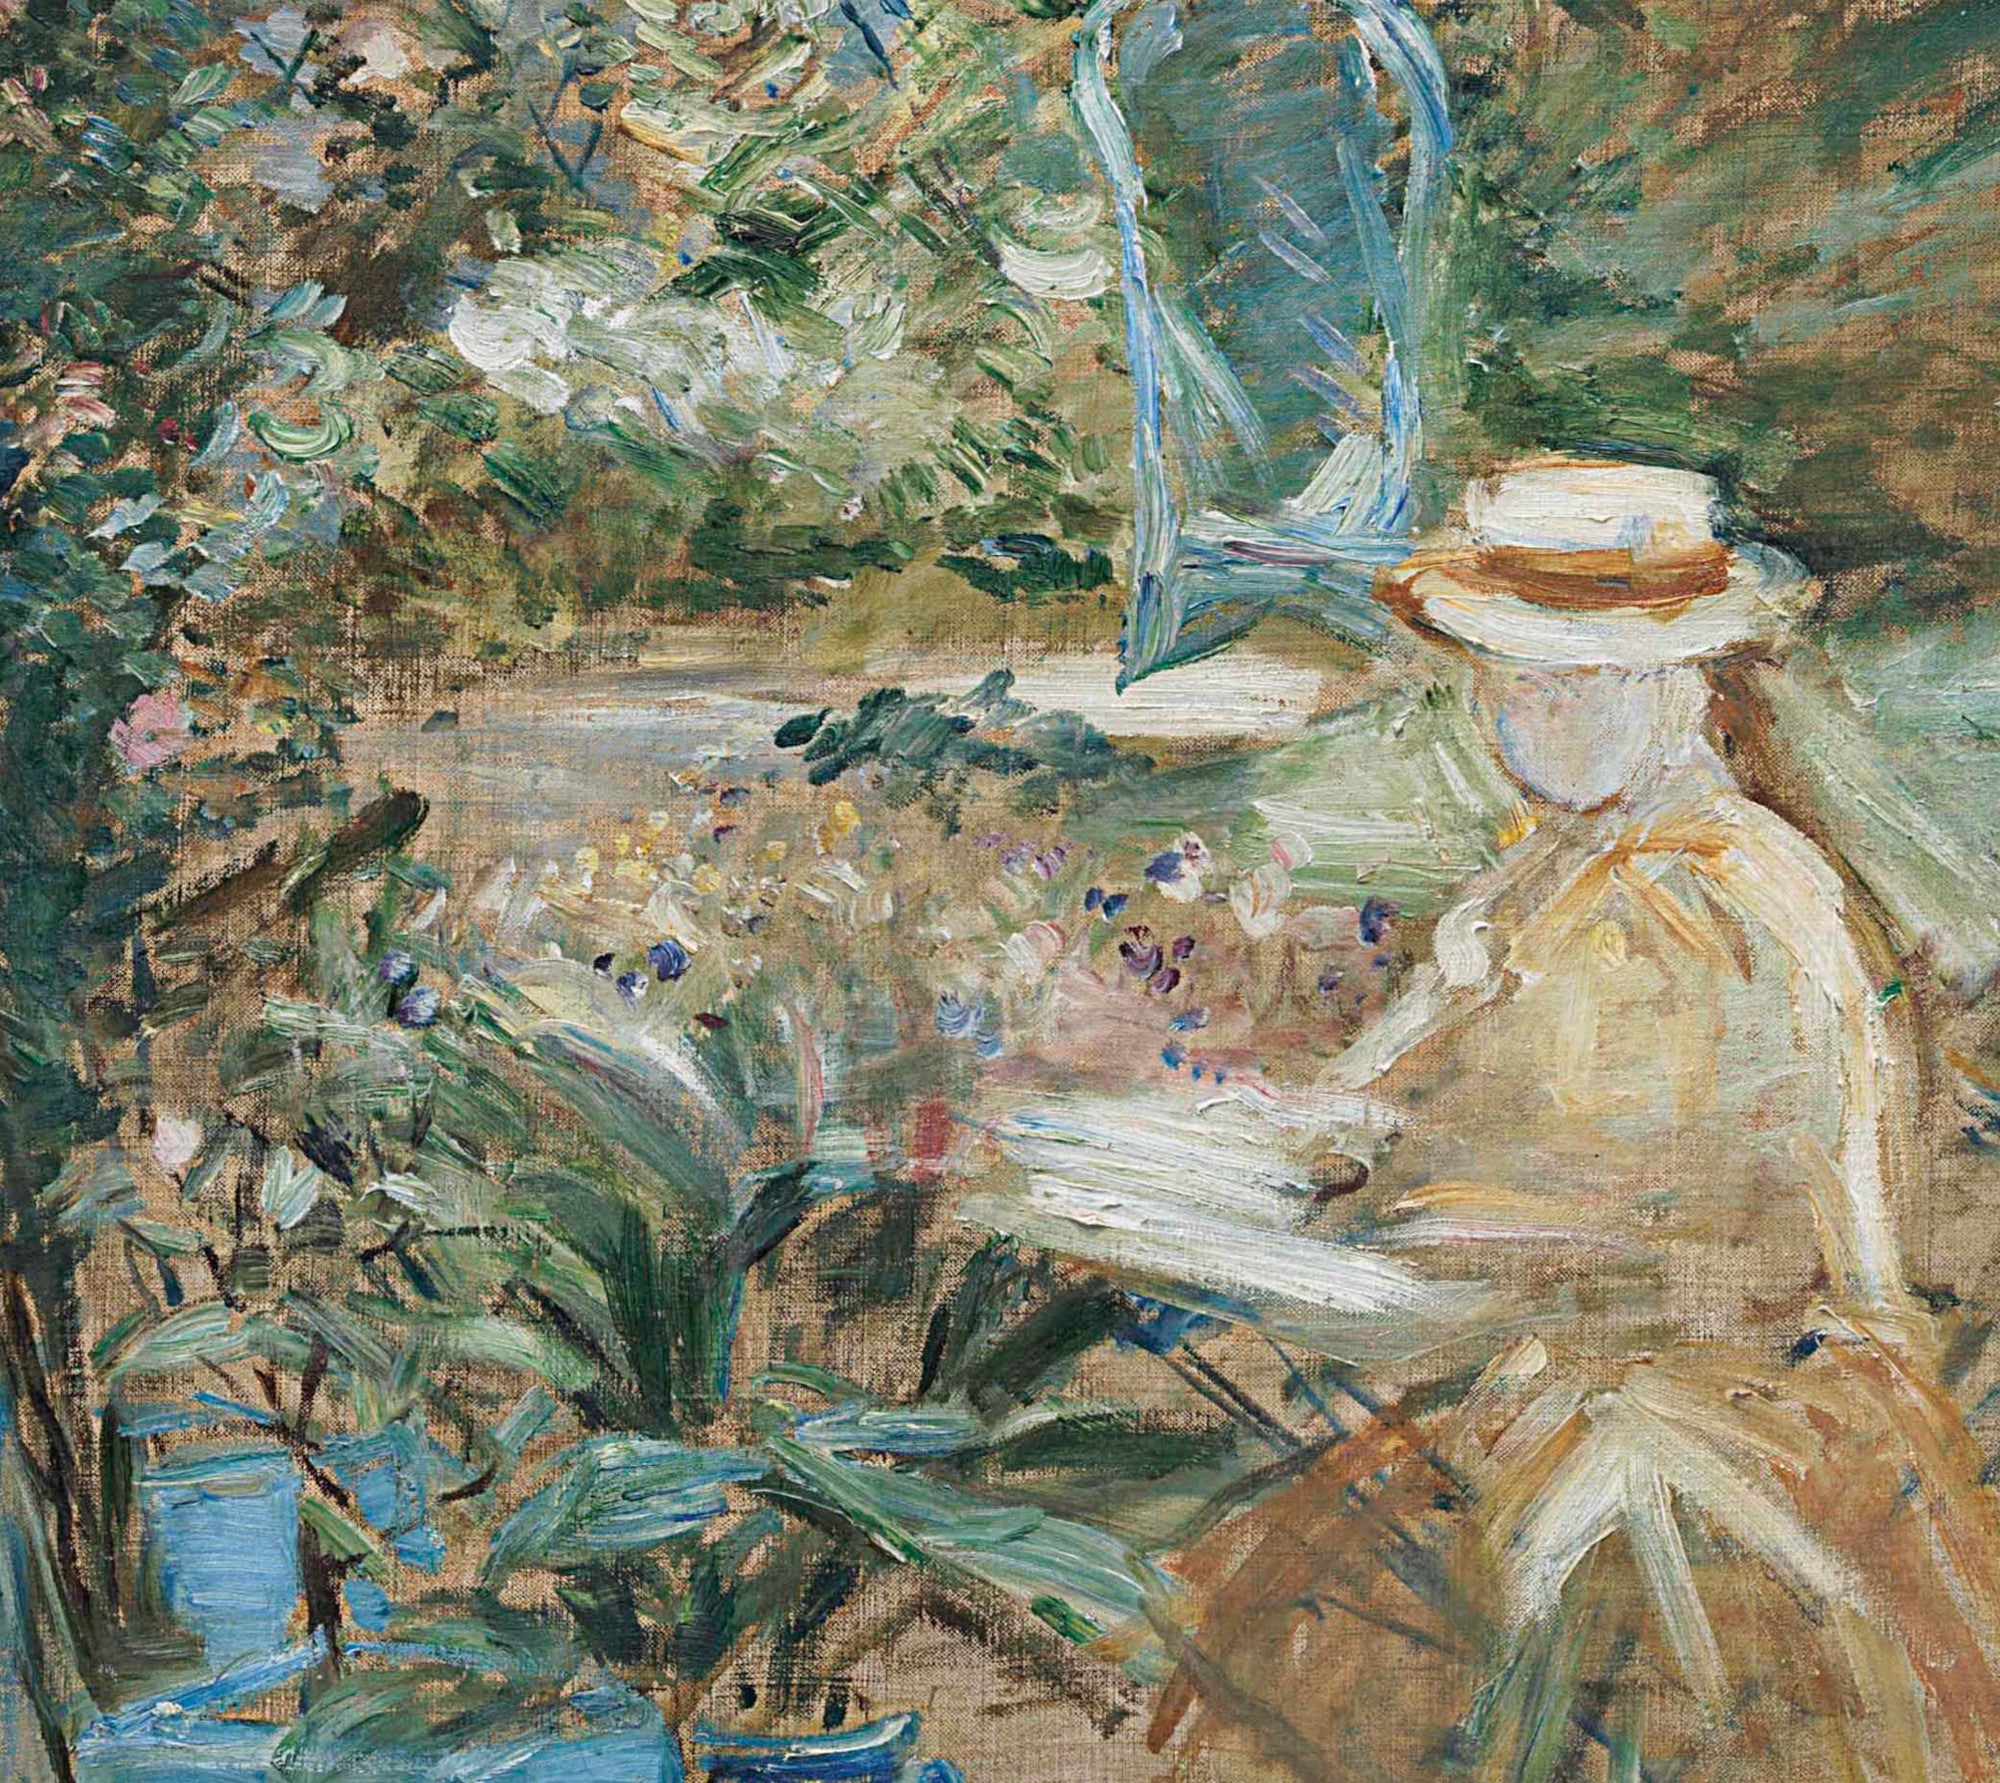 Berthe Morisot, French Fine Art Print : Girl in the Garden